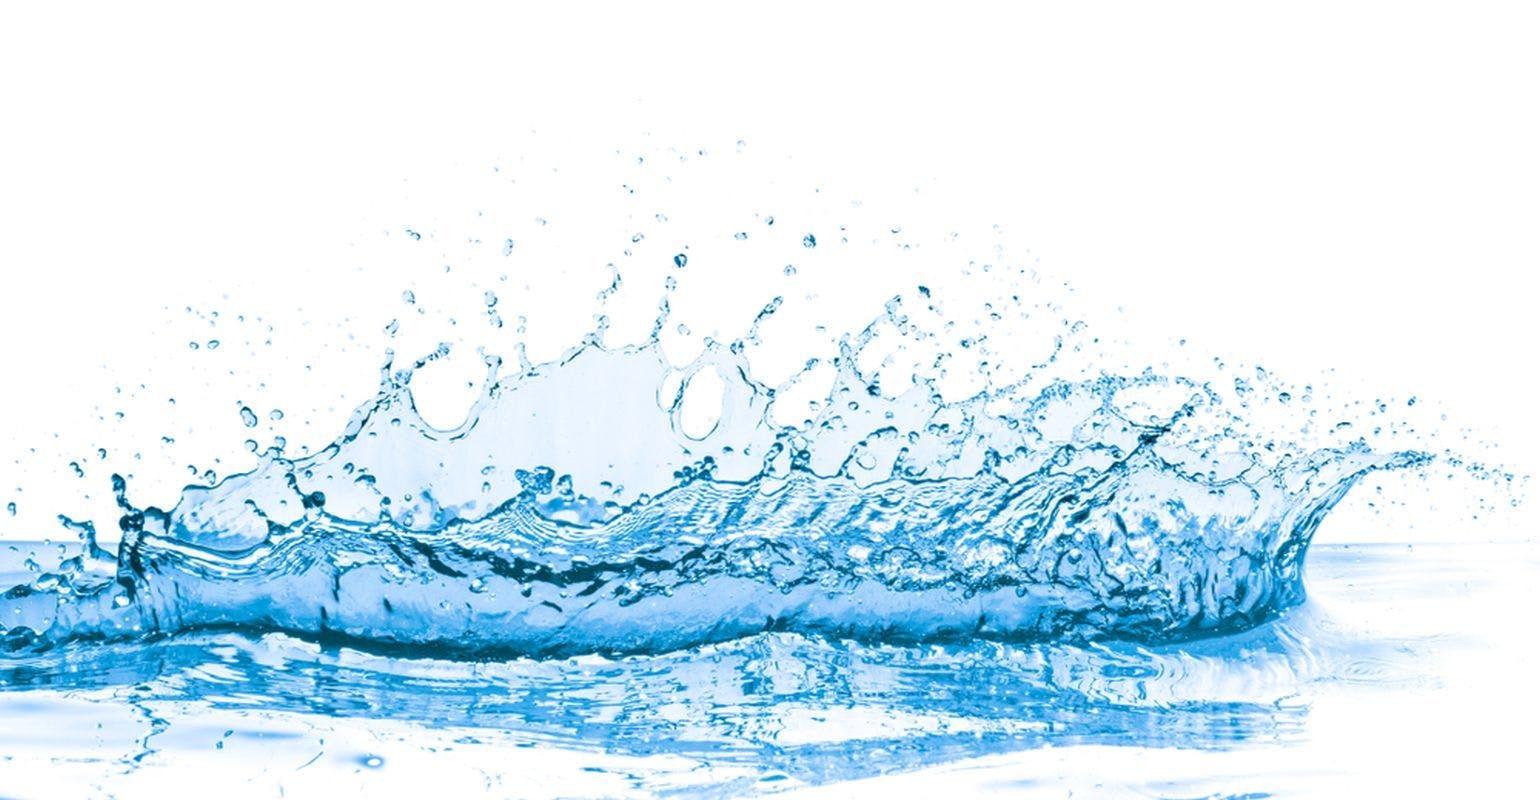 Preventing Waterborne Pathogen Transmission